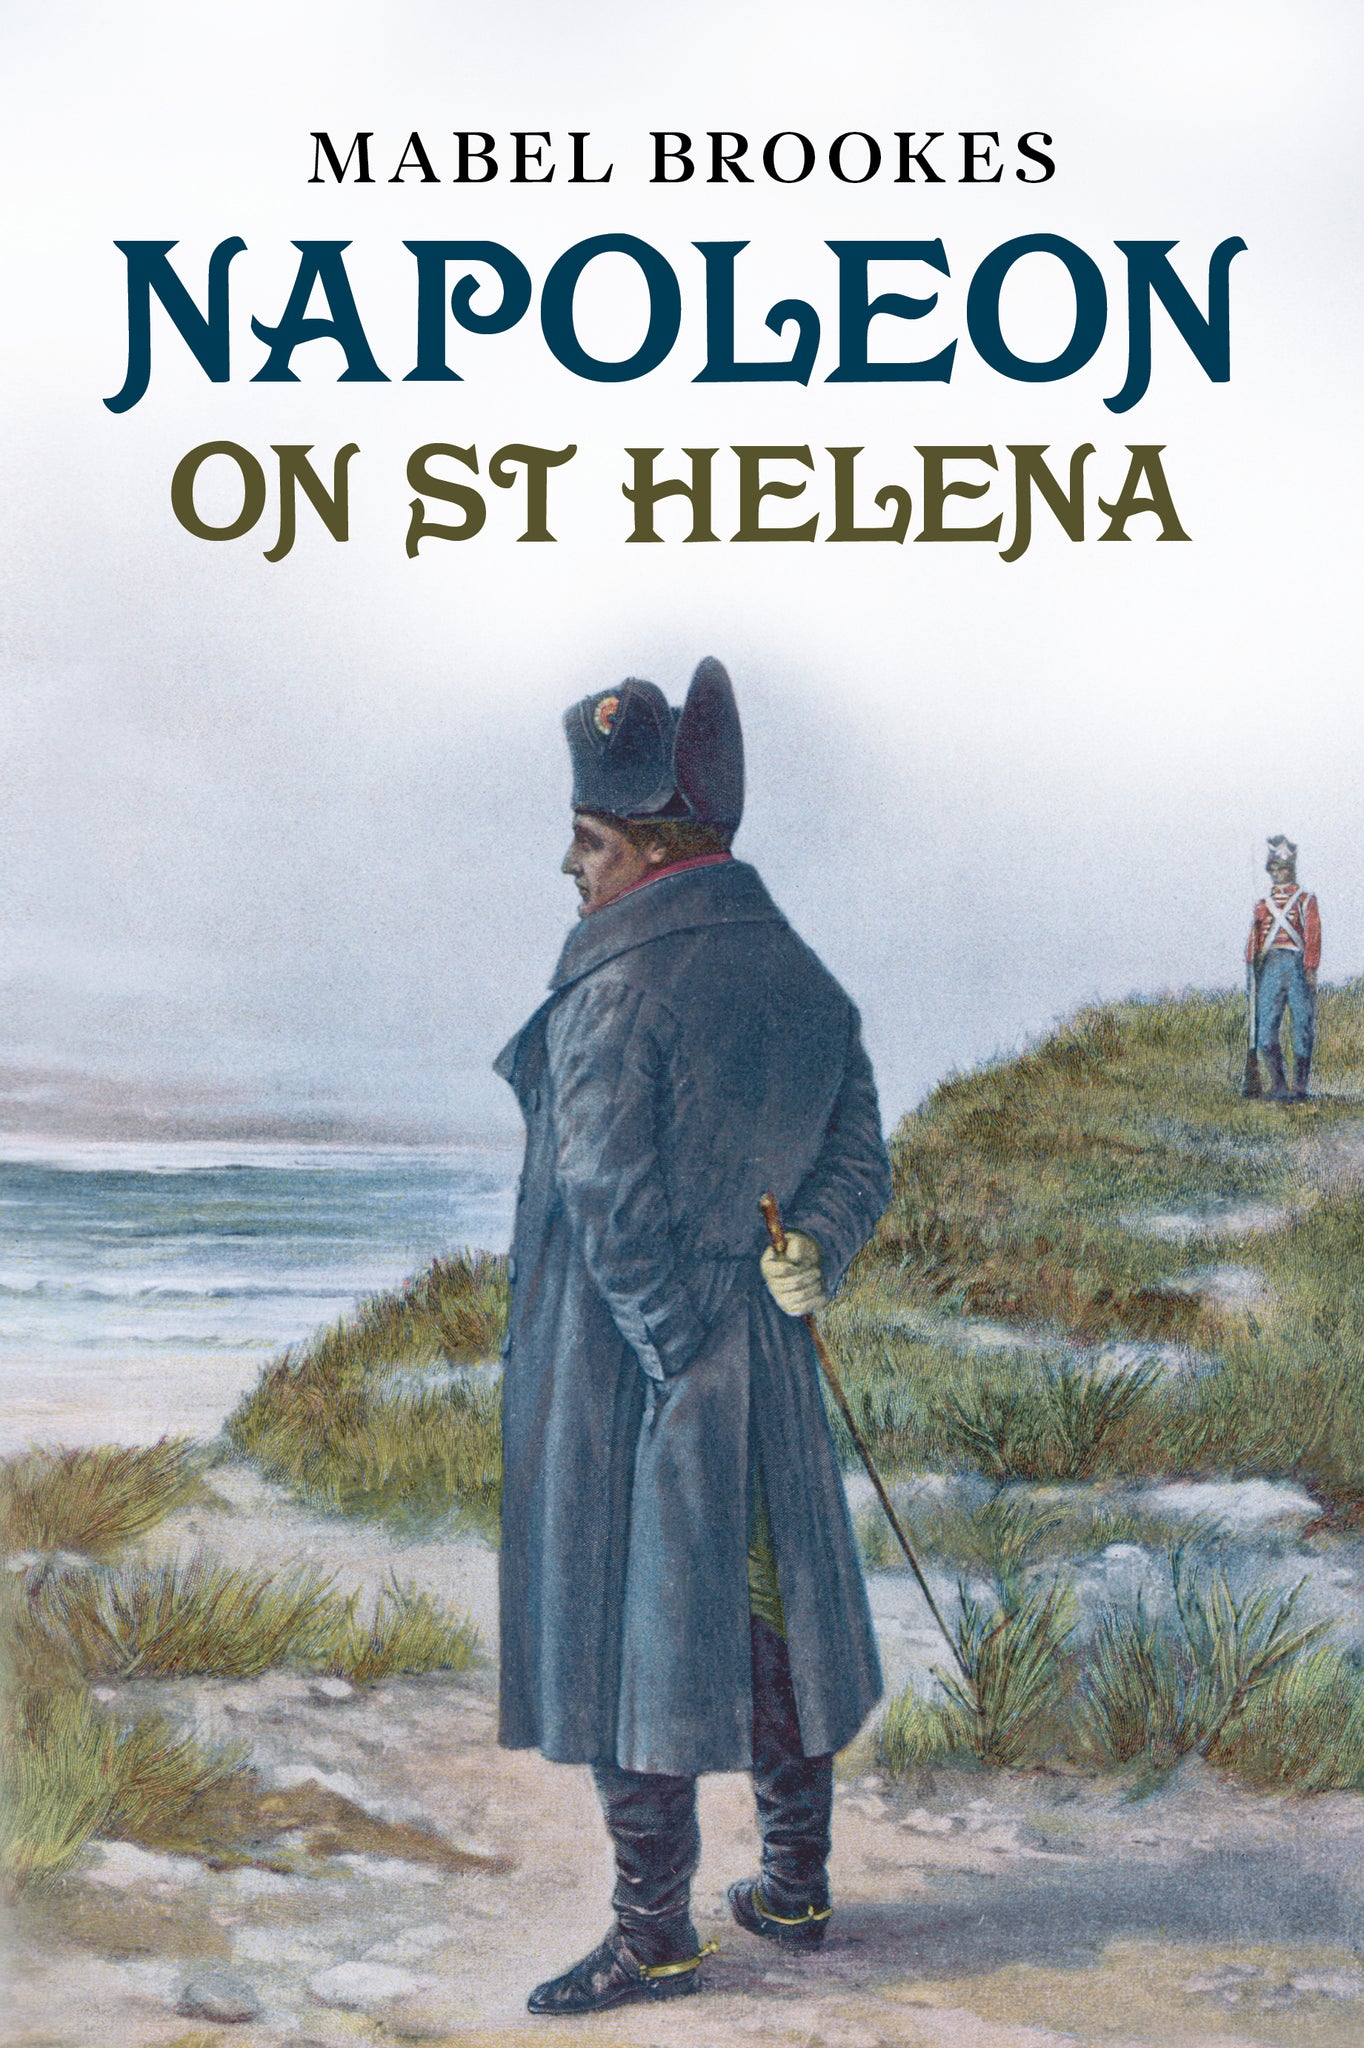 Napoleon on St Helena